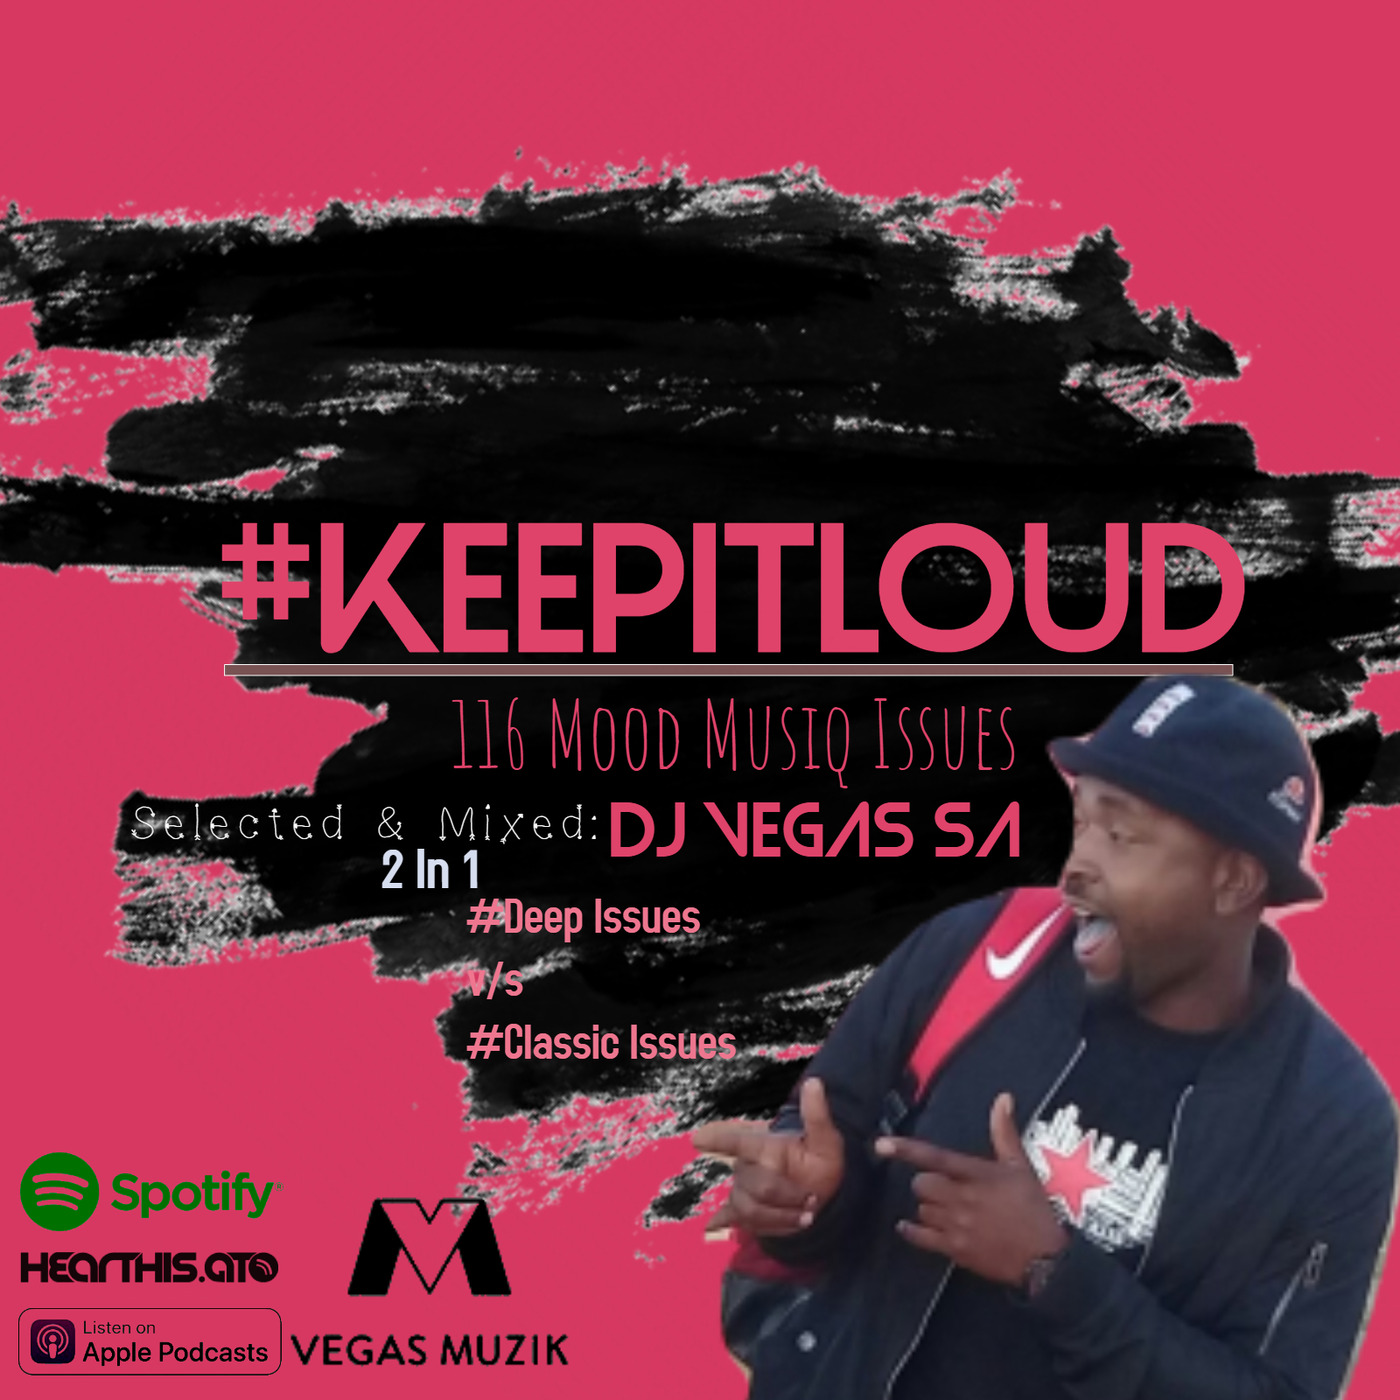 #KeepItLoud 116 Mood Deep Issues #001